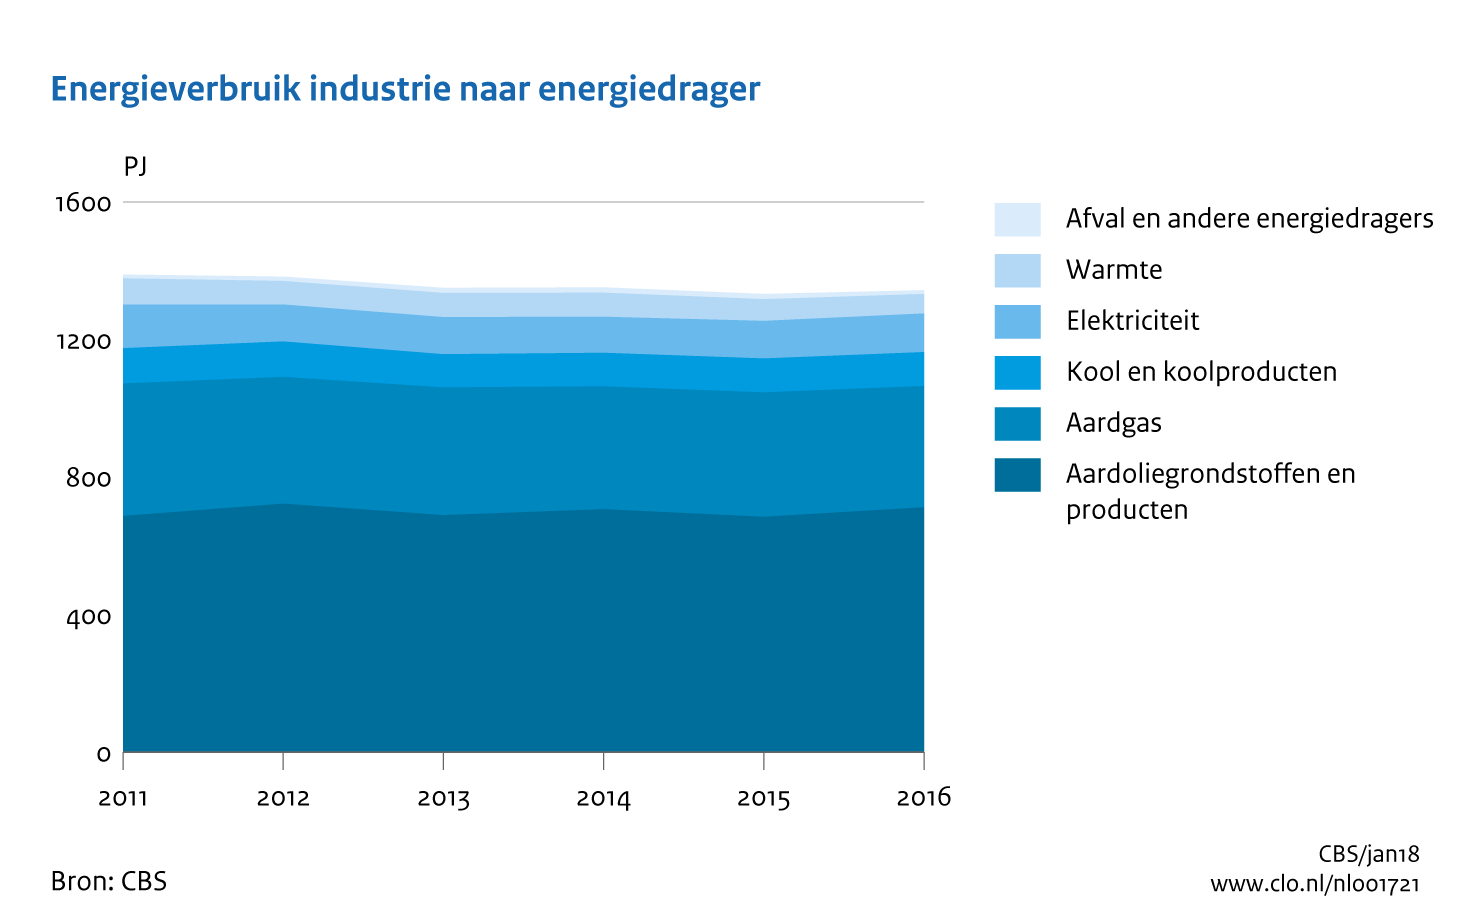 Figuur Energieverbruik industrie naar energiedrager 2011-2016. In de rest van de tekst wordt deze figuur uitgebreider uitgelegd.